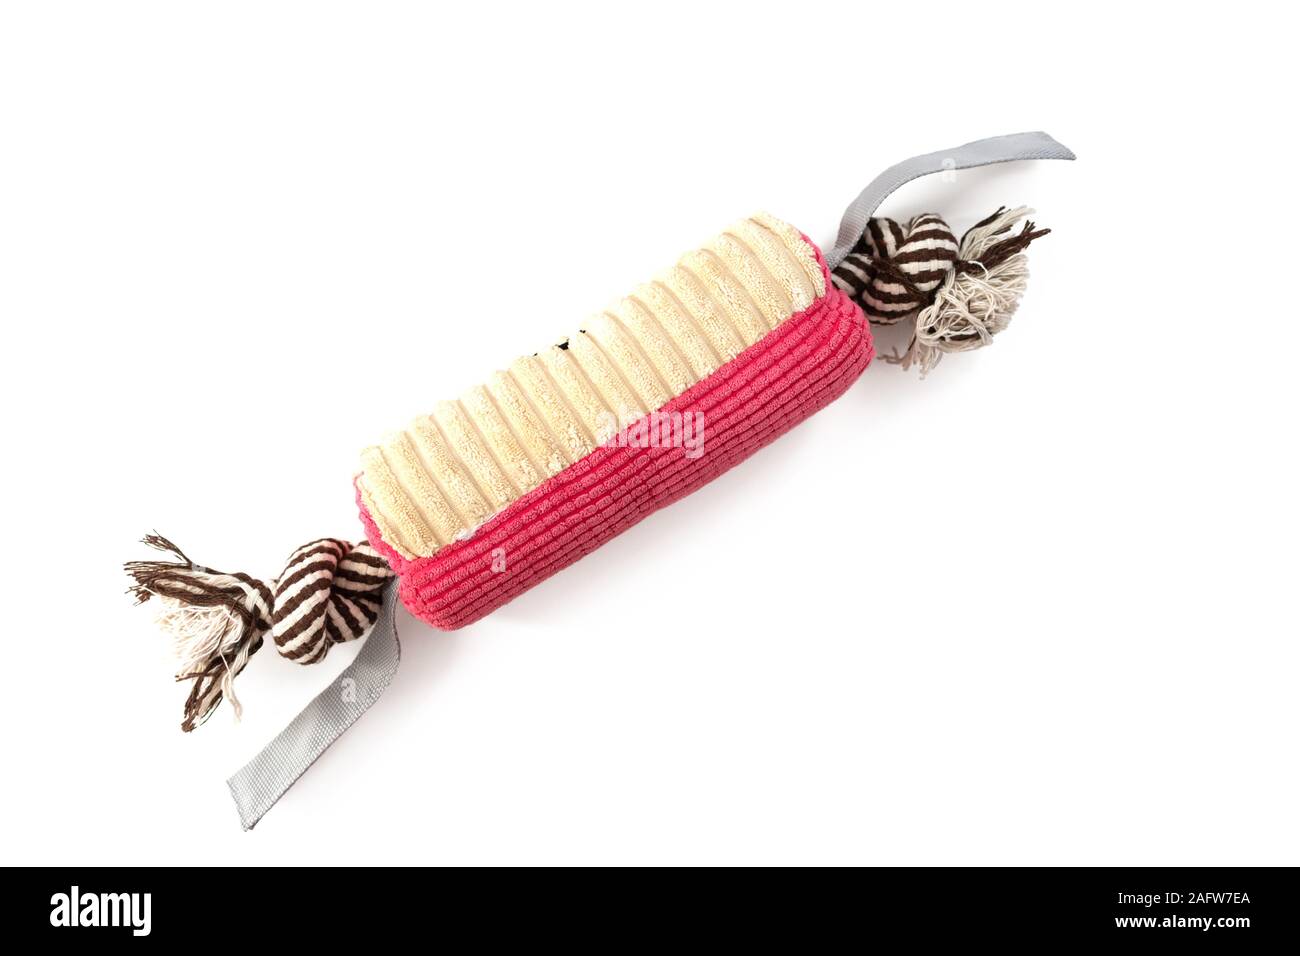 Colorato giocattolo morbido con fune per denti di cane isolato su sfondo bianco. Giocattolo per cane denti per masticare. Foto Stock